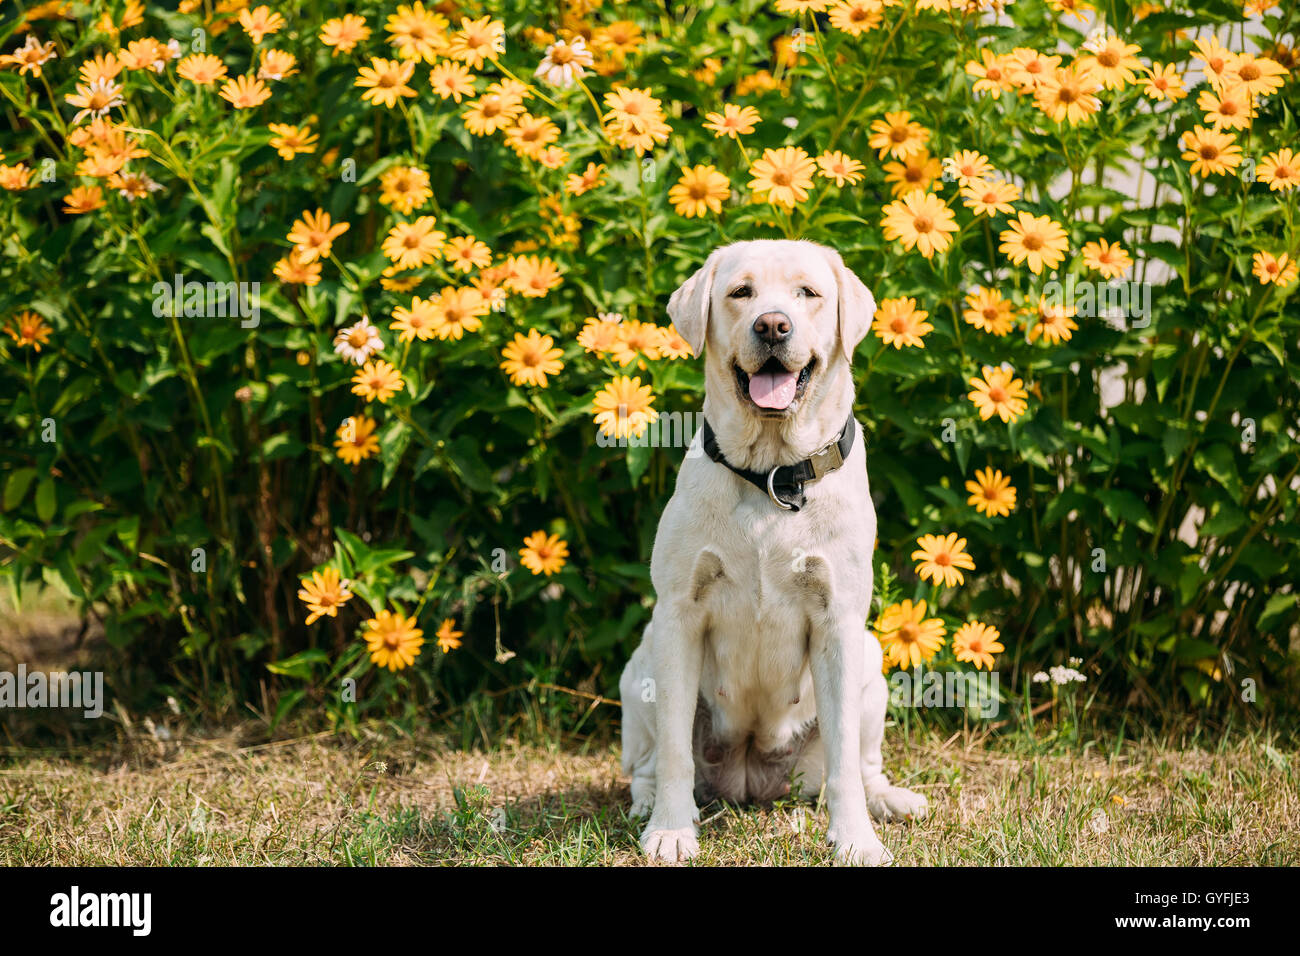 Sorridente con linguetta, fissando gli occhi giallo Golden Labrador femmina adulta Dog sitter in posa sul prato rifilato del giardino. Il Brigantino Foto Stock